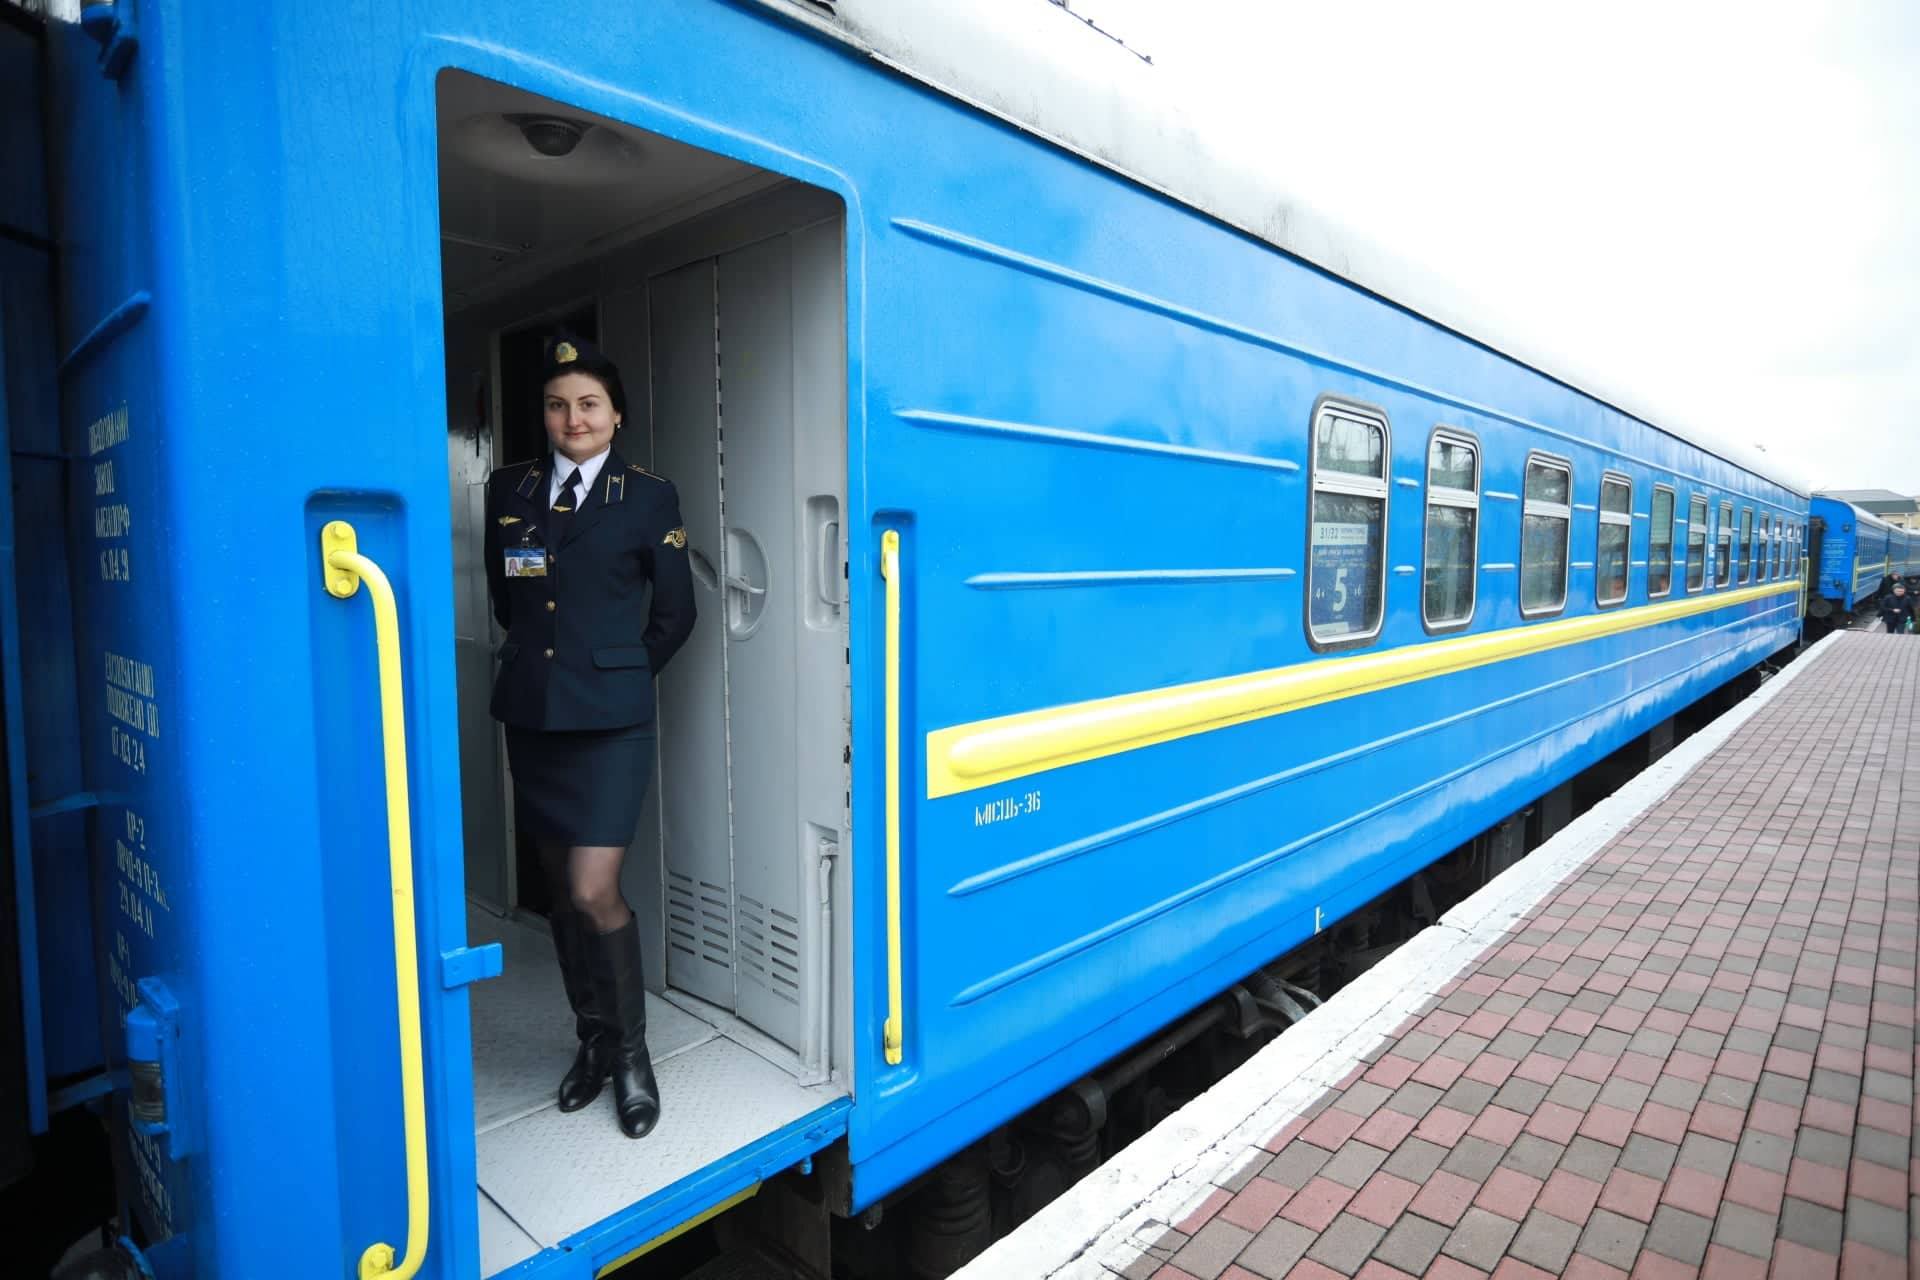 Several Innovations for Passengers from Ukrzaliznytsia